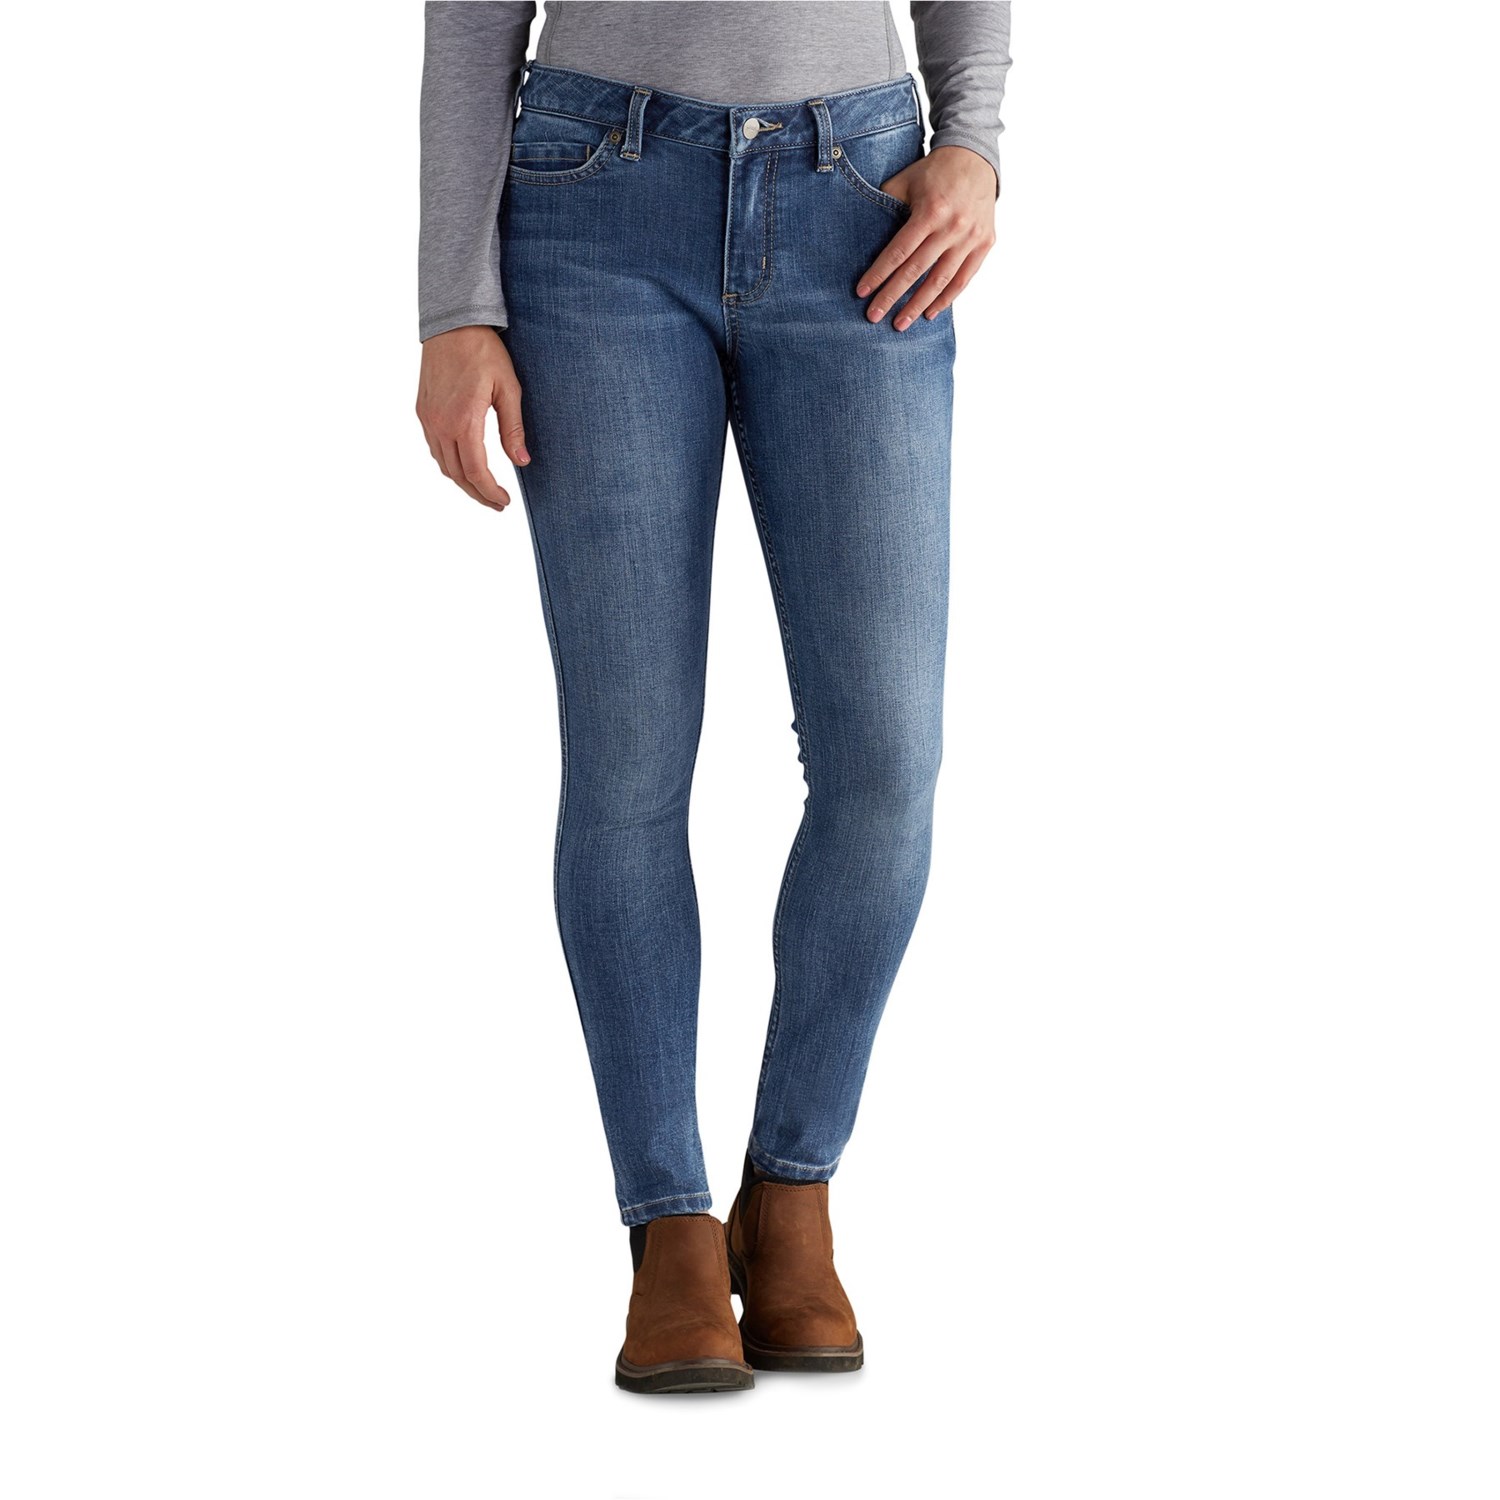 () J[n[g 102734 Cg Mbh tbNX XLj[ W[Y - X tBbg Carhartt 102734 Layton Rugged Flex Skinny Jeans - Slim Fit Sundried